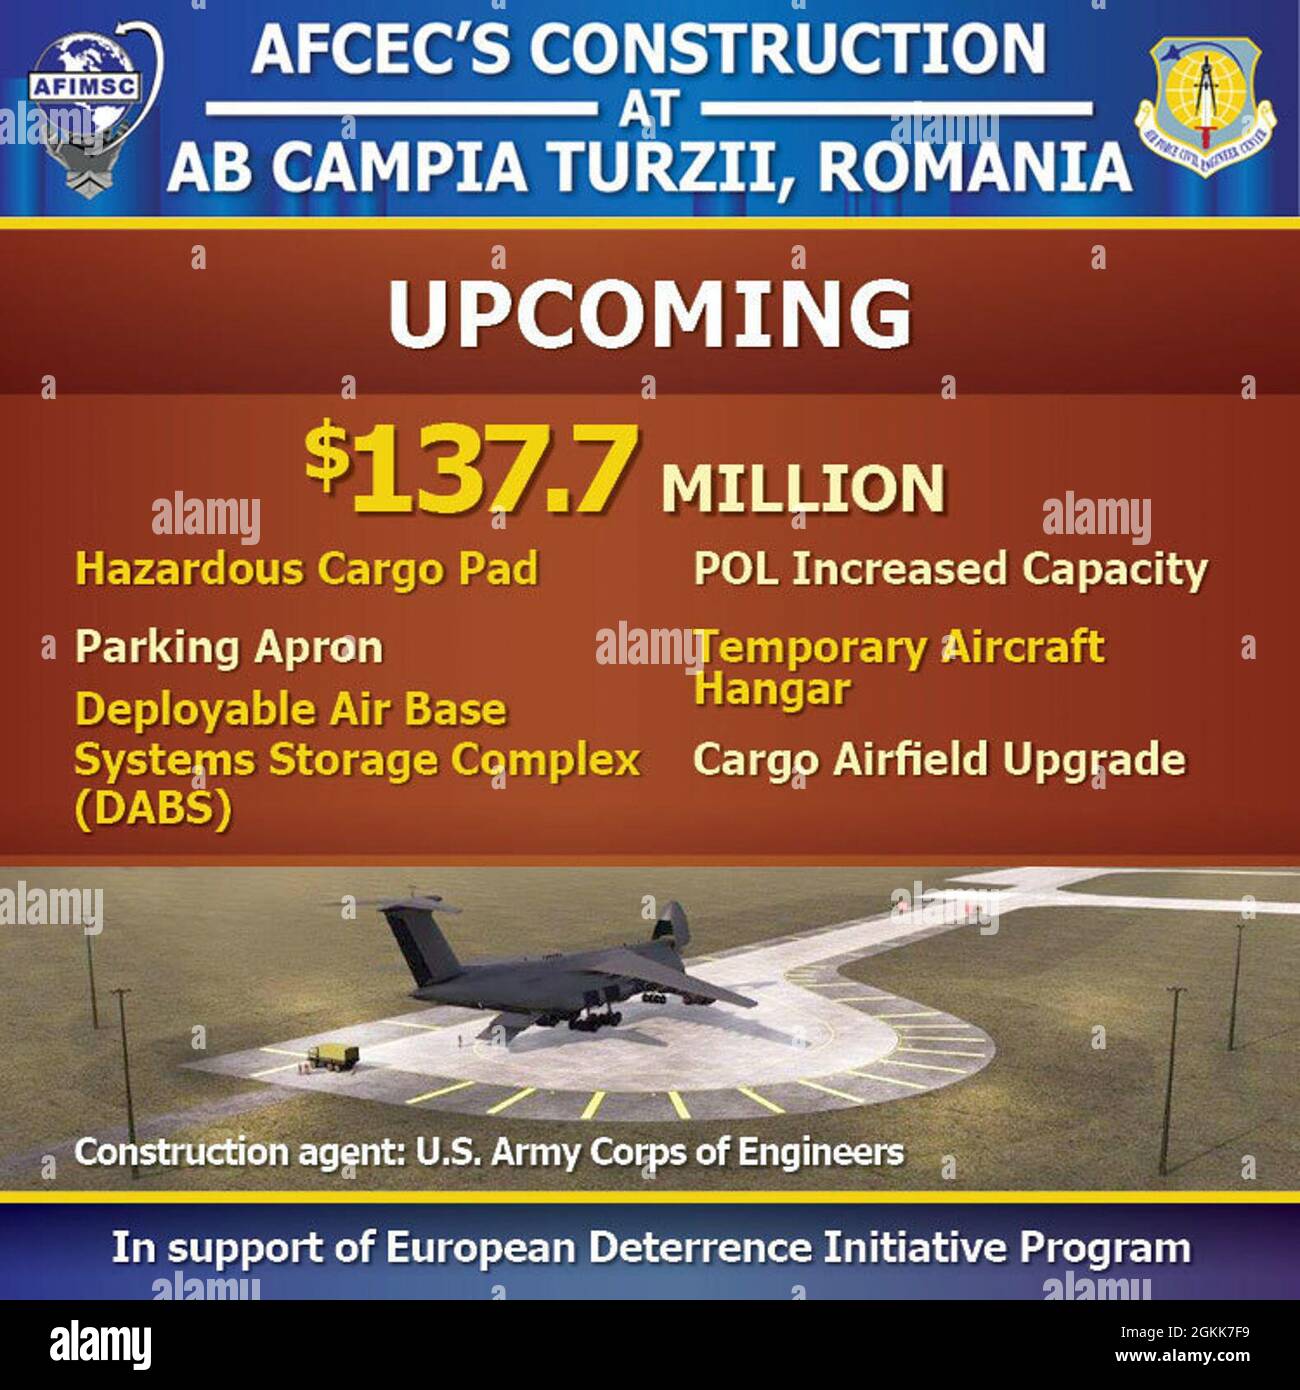 Das Air Force Civil Engineer Center modernisiert die Infrastruktur auf dem Air Base Campia Turzii, Rumänien, durch seine mehrschichtigen Baumaßnahmen. Die Investition umfasst kürzlich abgeschlossene Projekte mit 5,7 Millionen Euro. Stockfoto